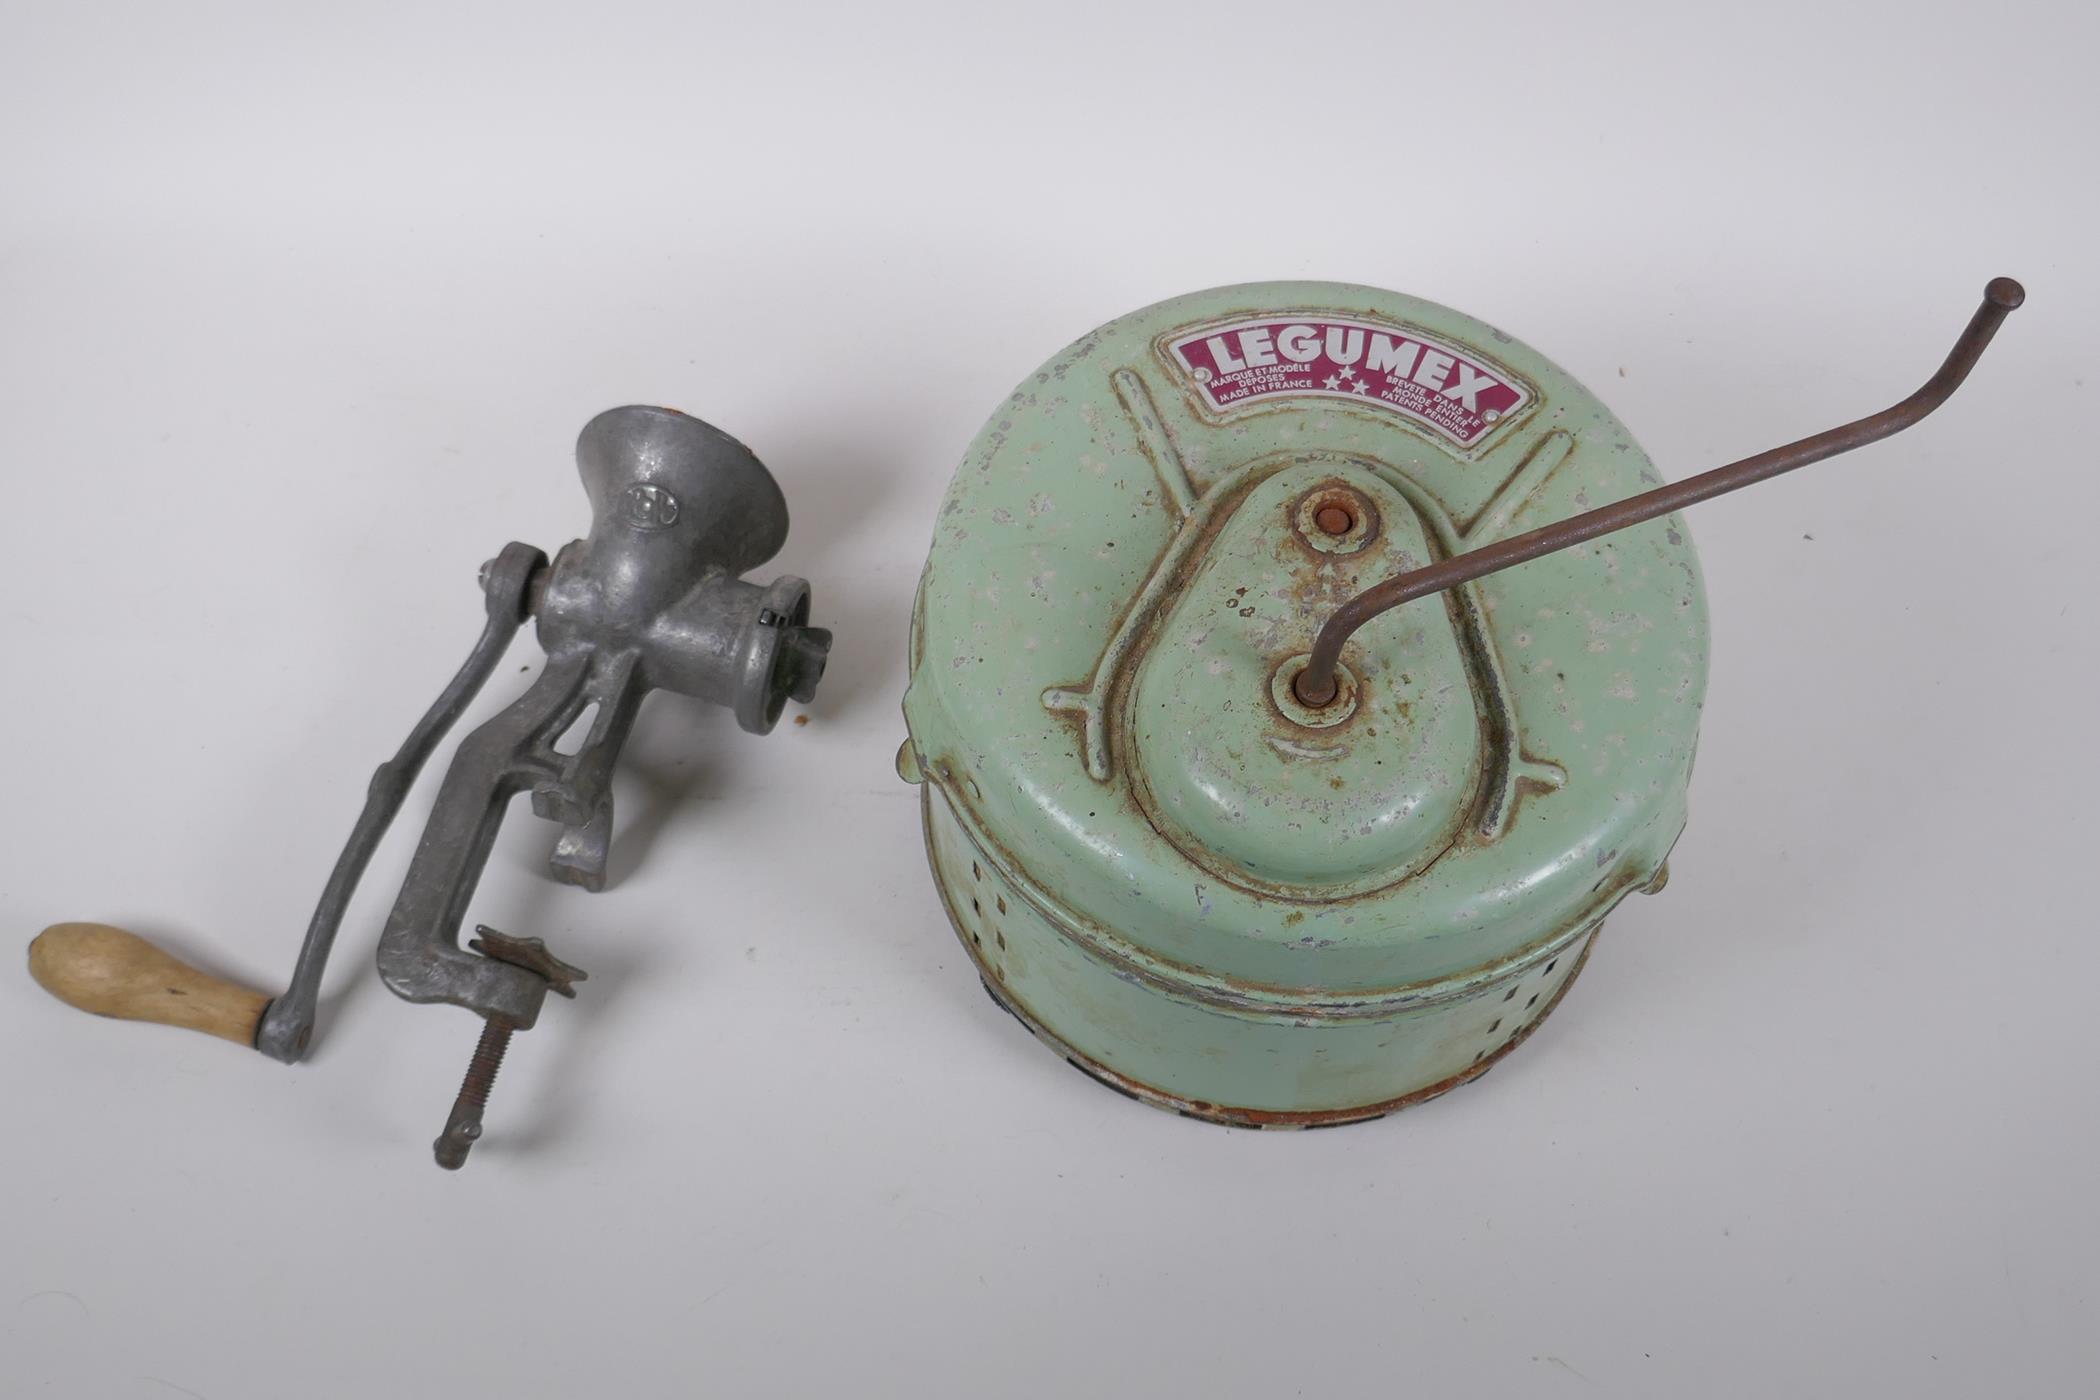 A vintage French Legumex mechanical potato peeler, and a British Spong mincer/grinder, peeler 23cm